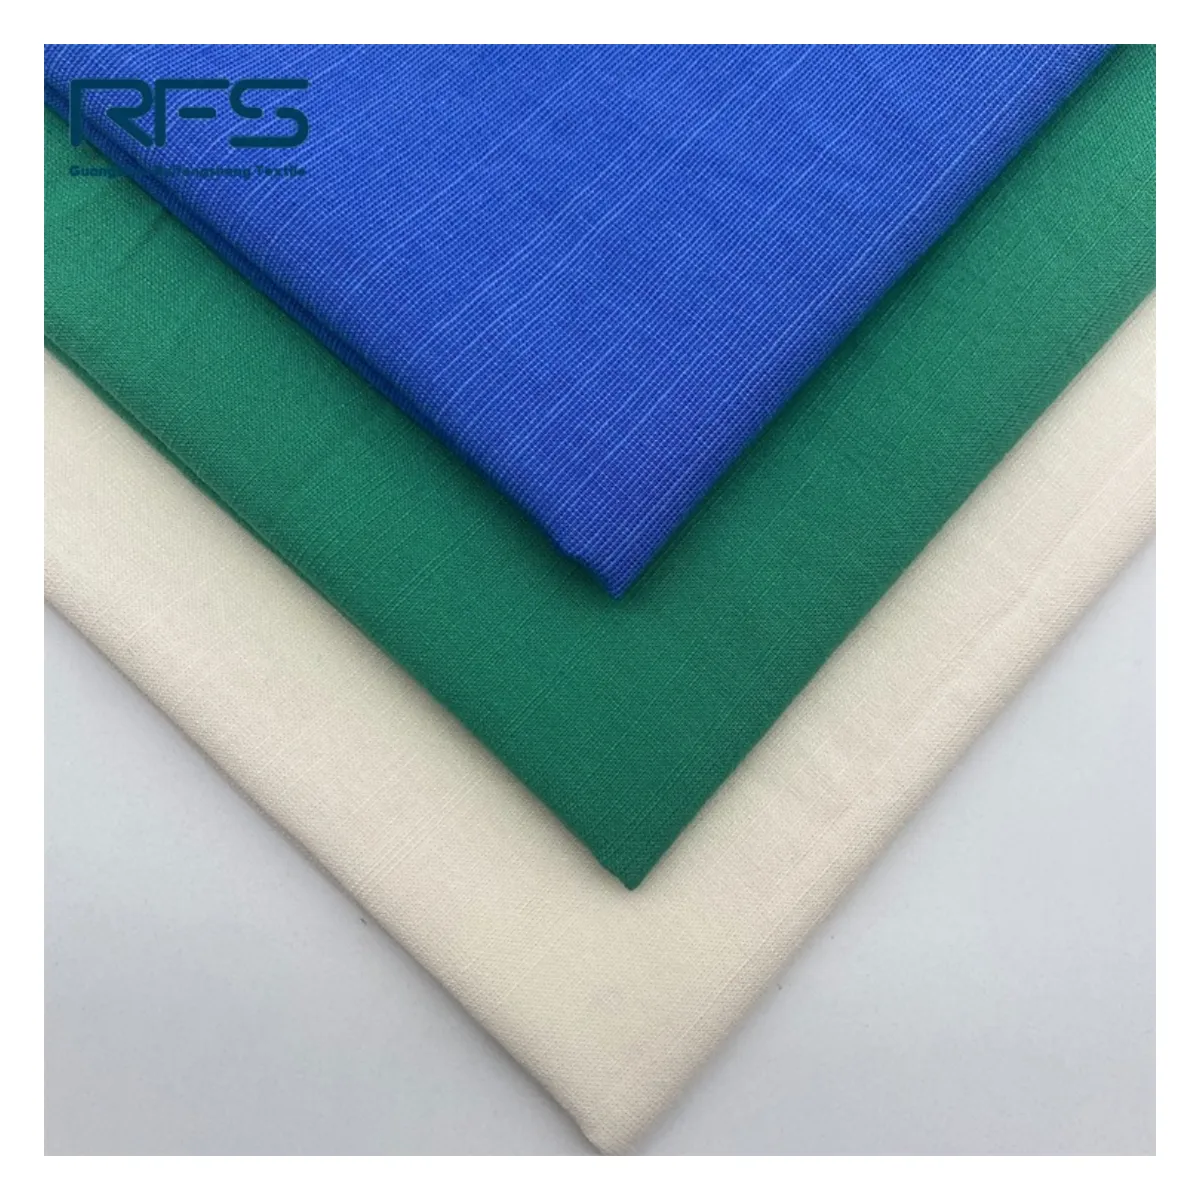 Approvisionnement d'usine 45% viscose 55% coton doux couleur unie bambou noeud tissu chemise robe vêtements maison textile tissu